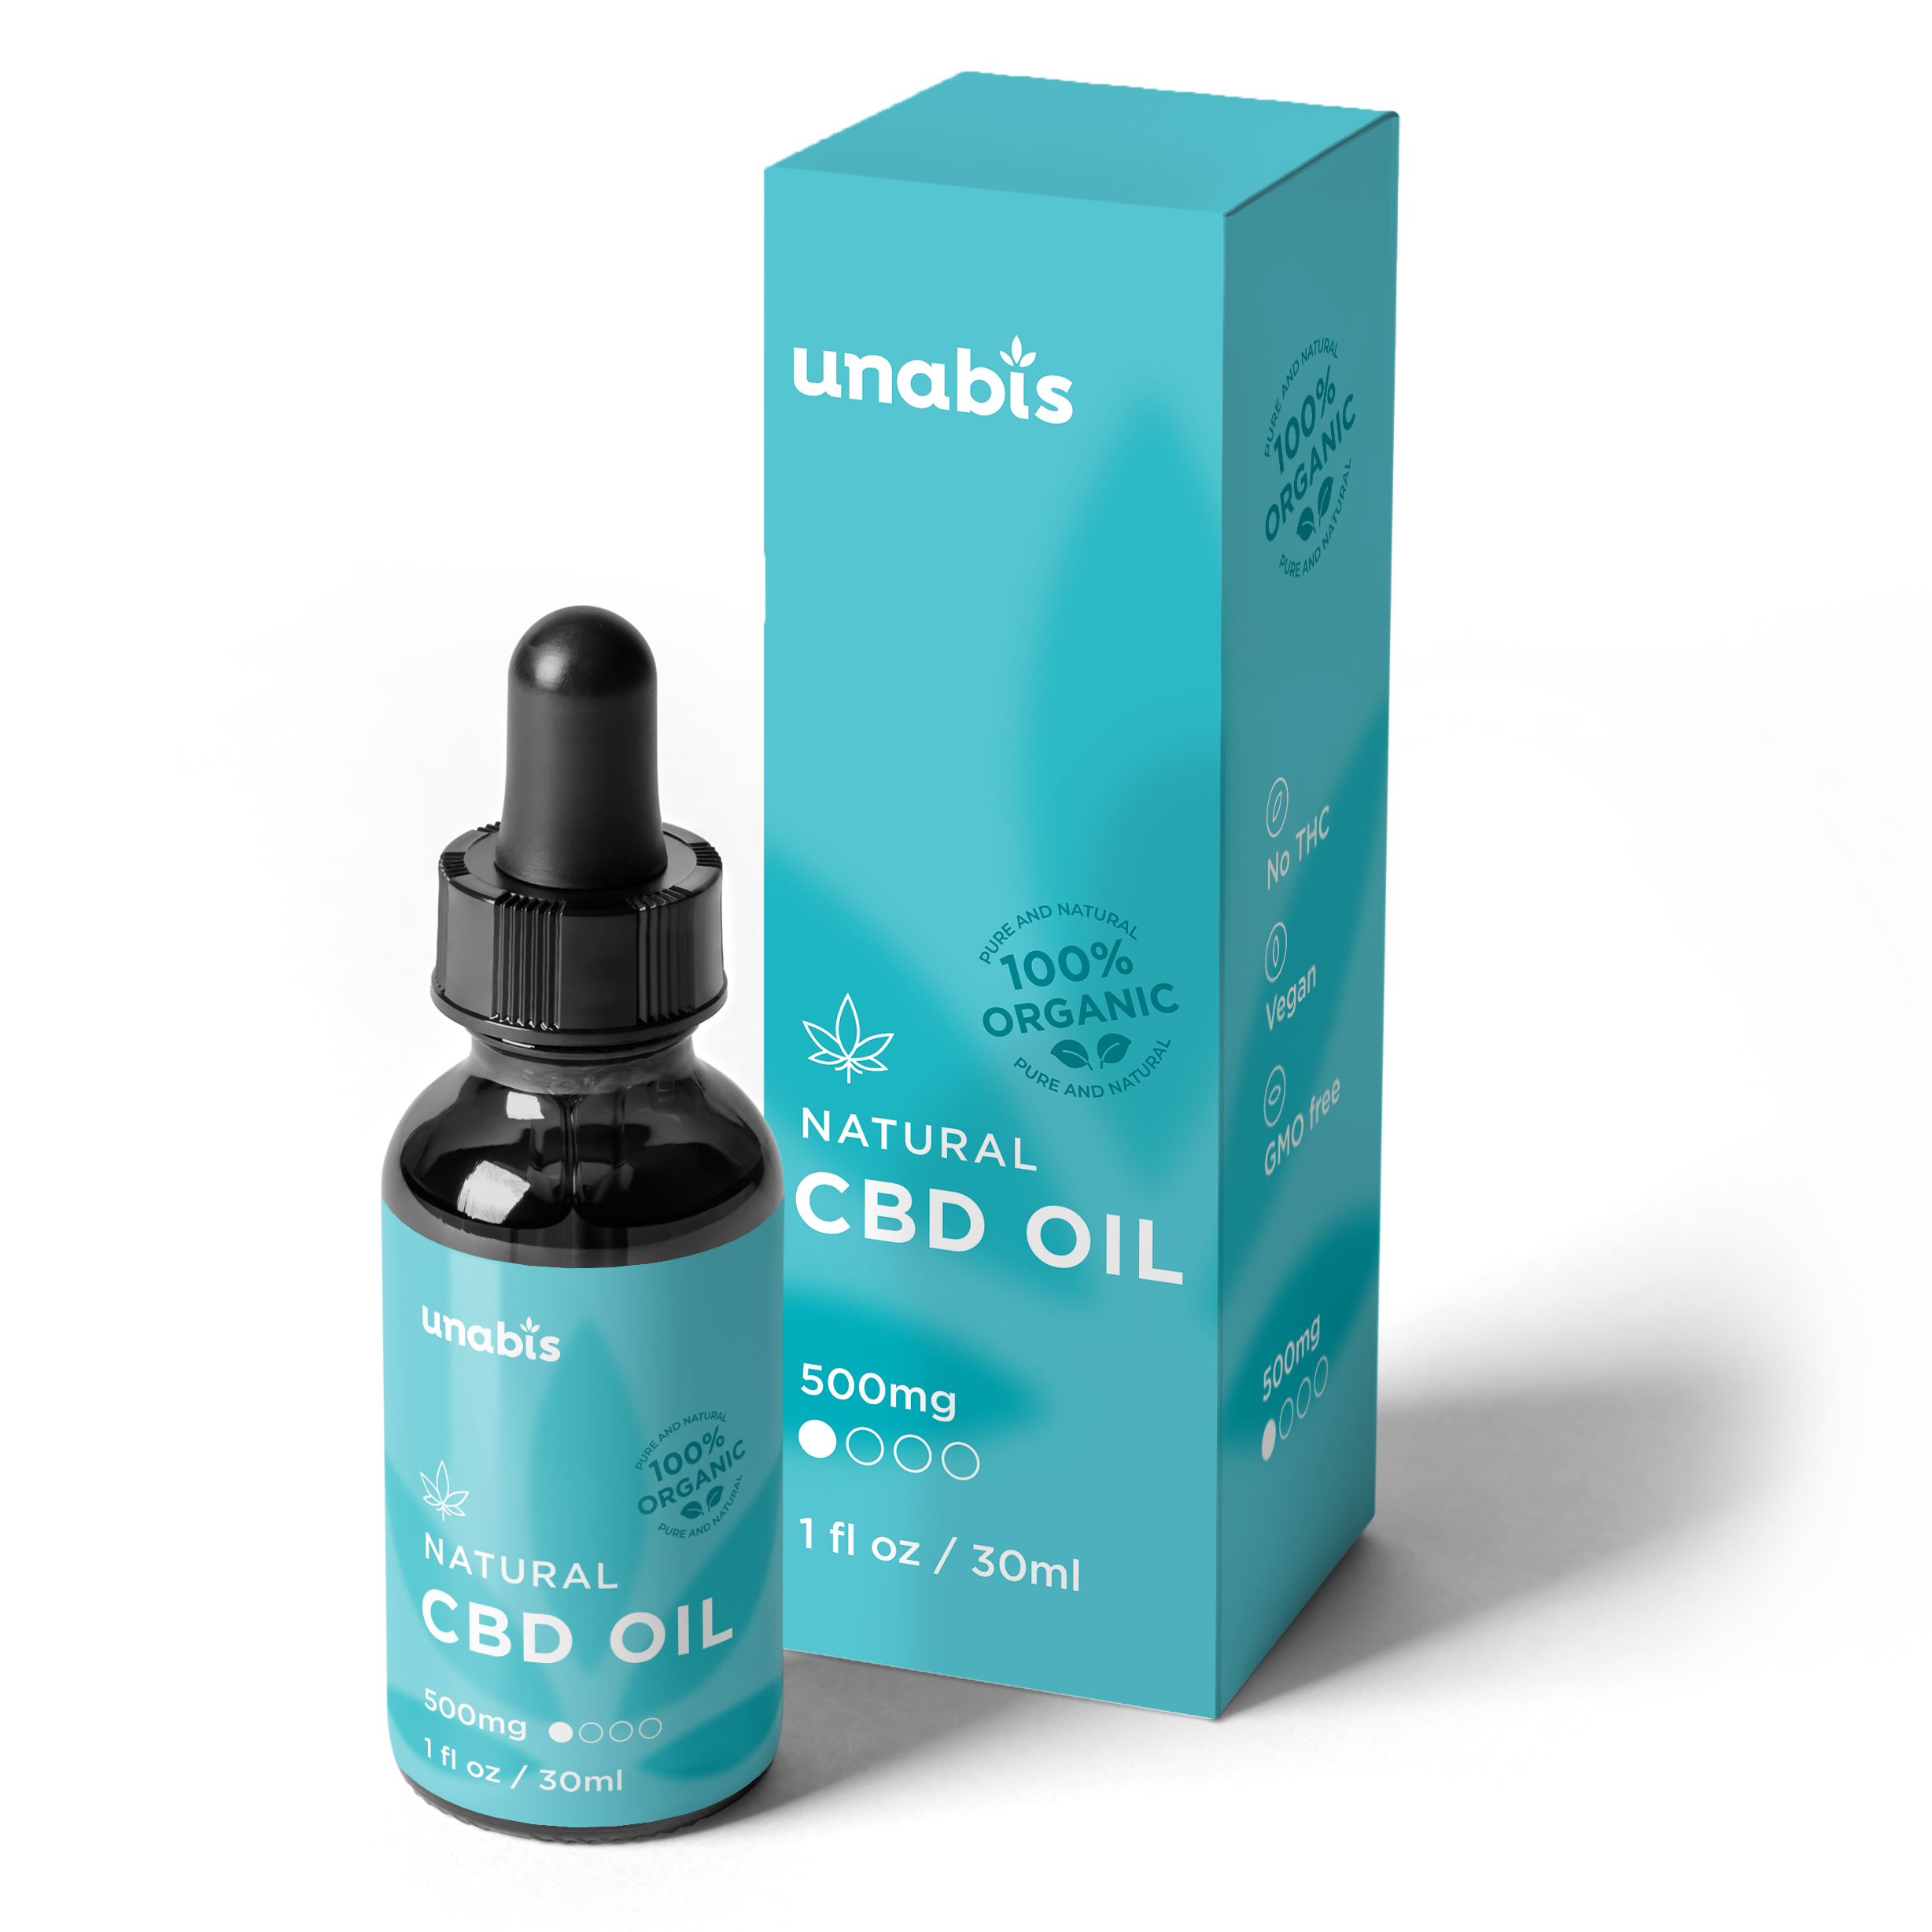 Natural CBD Oil - Pure CBD Oil for Sale | Unabis